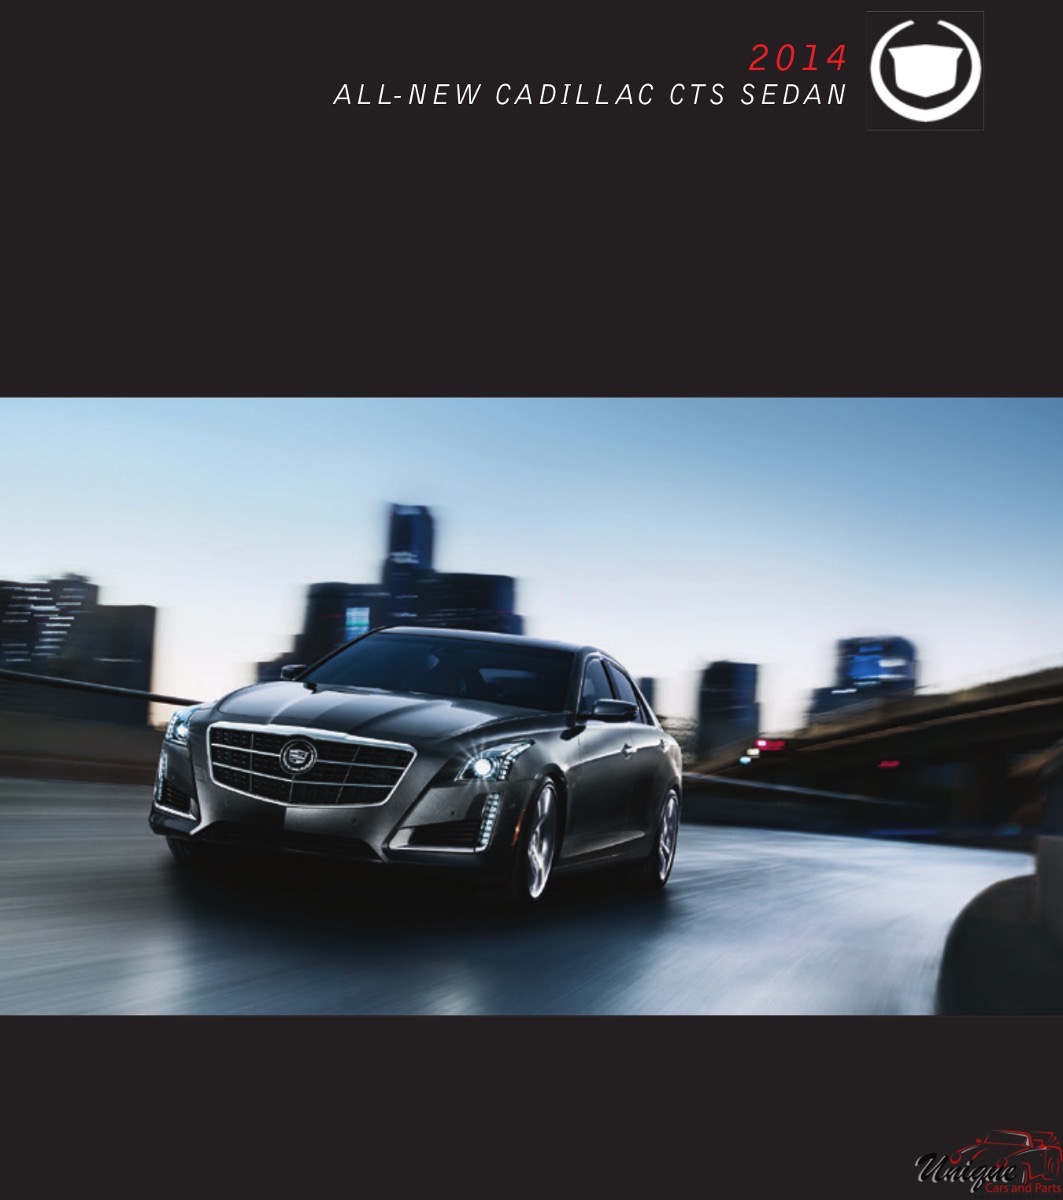 2014 Cadillac CTS Sedan Page 11